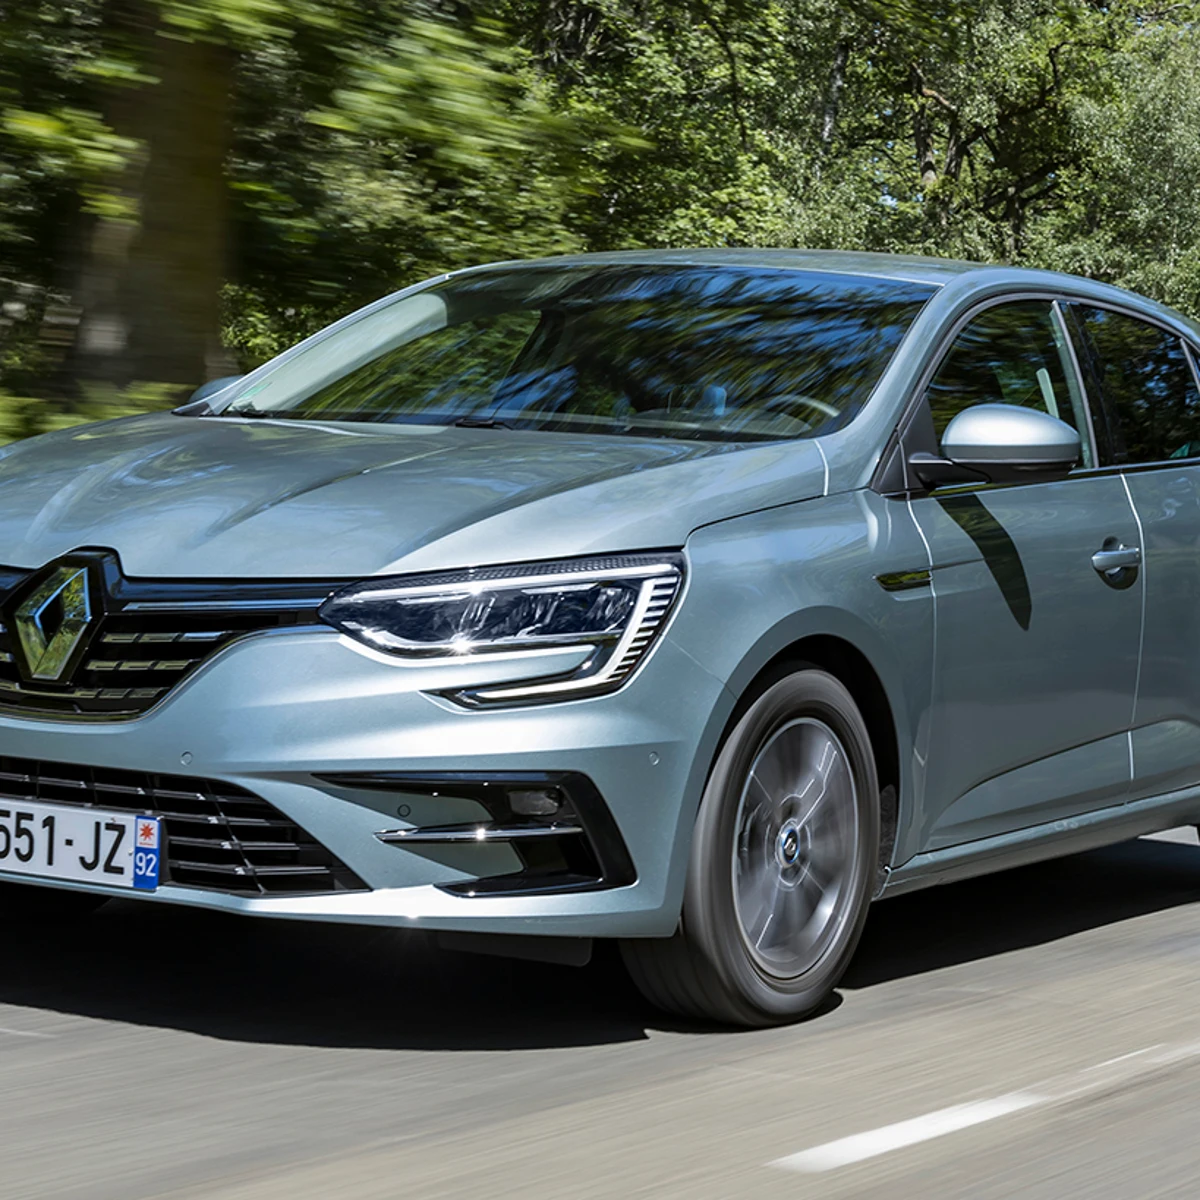 La gama española del Renault Mégane se reduce a mínimos